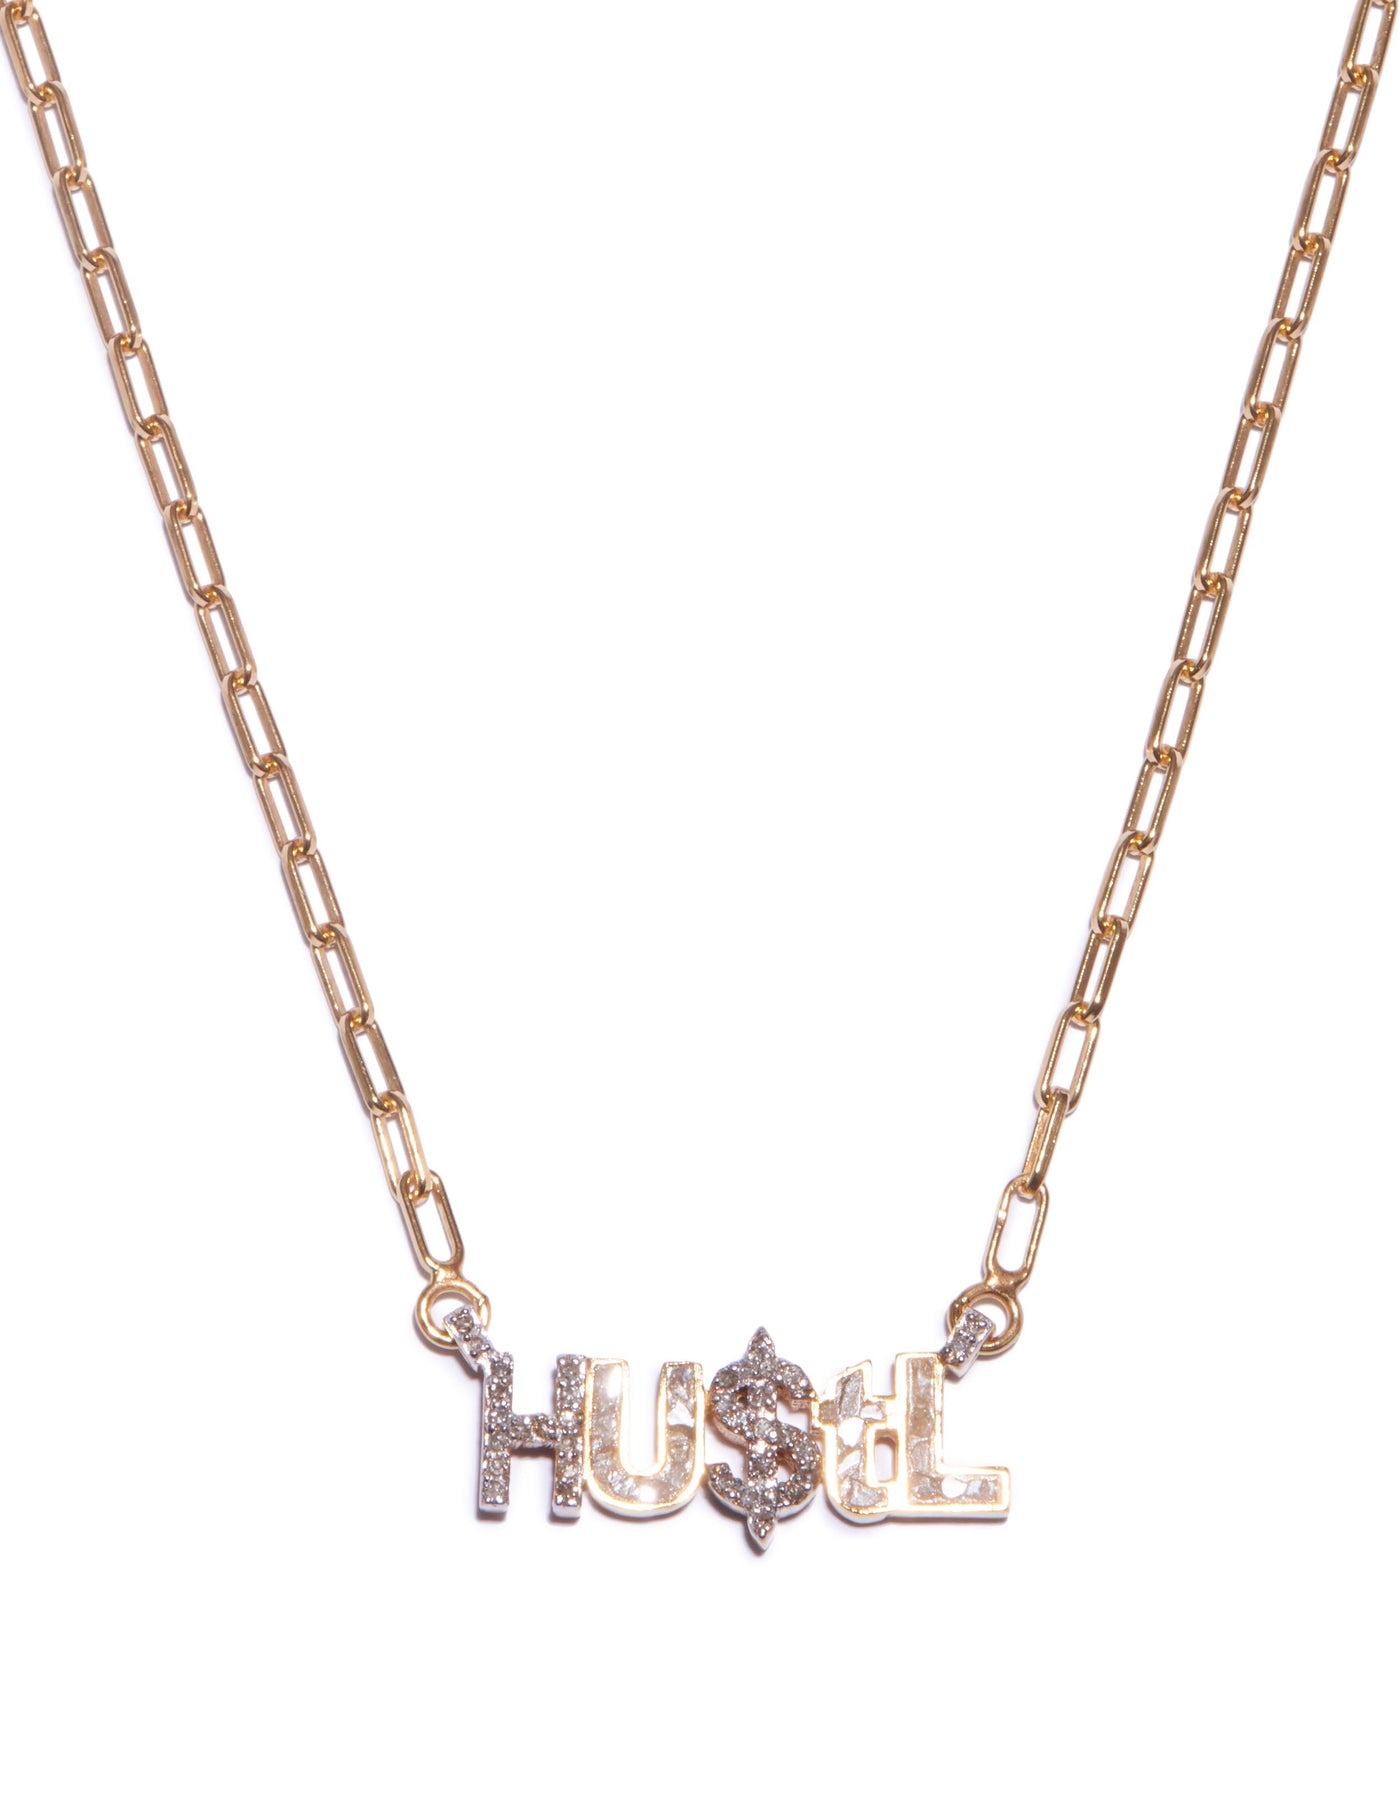 Hustl' Gold Vermeil Pendant Necklace